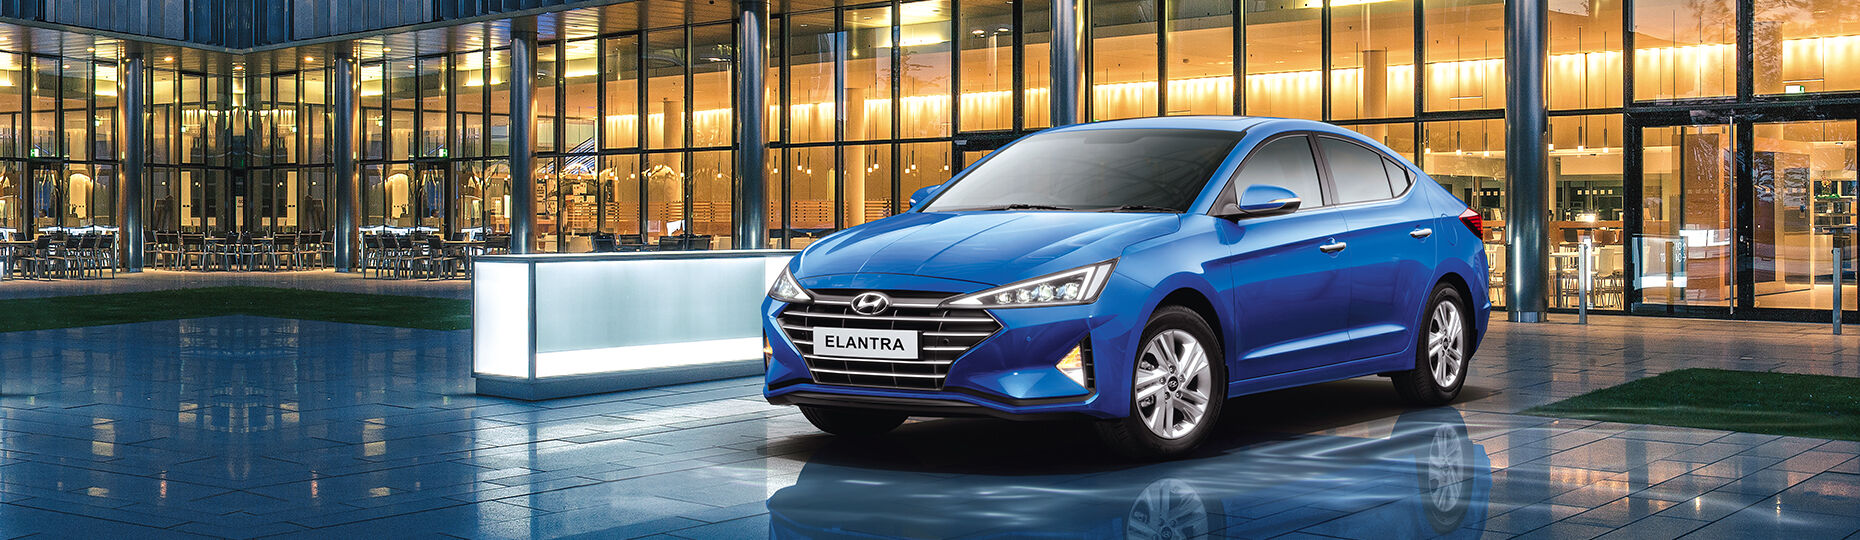 Elantra Interior Premium Sedan Hyundai India